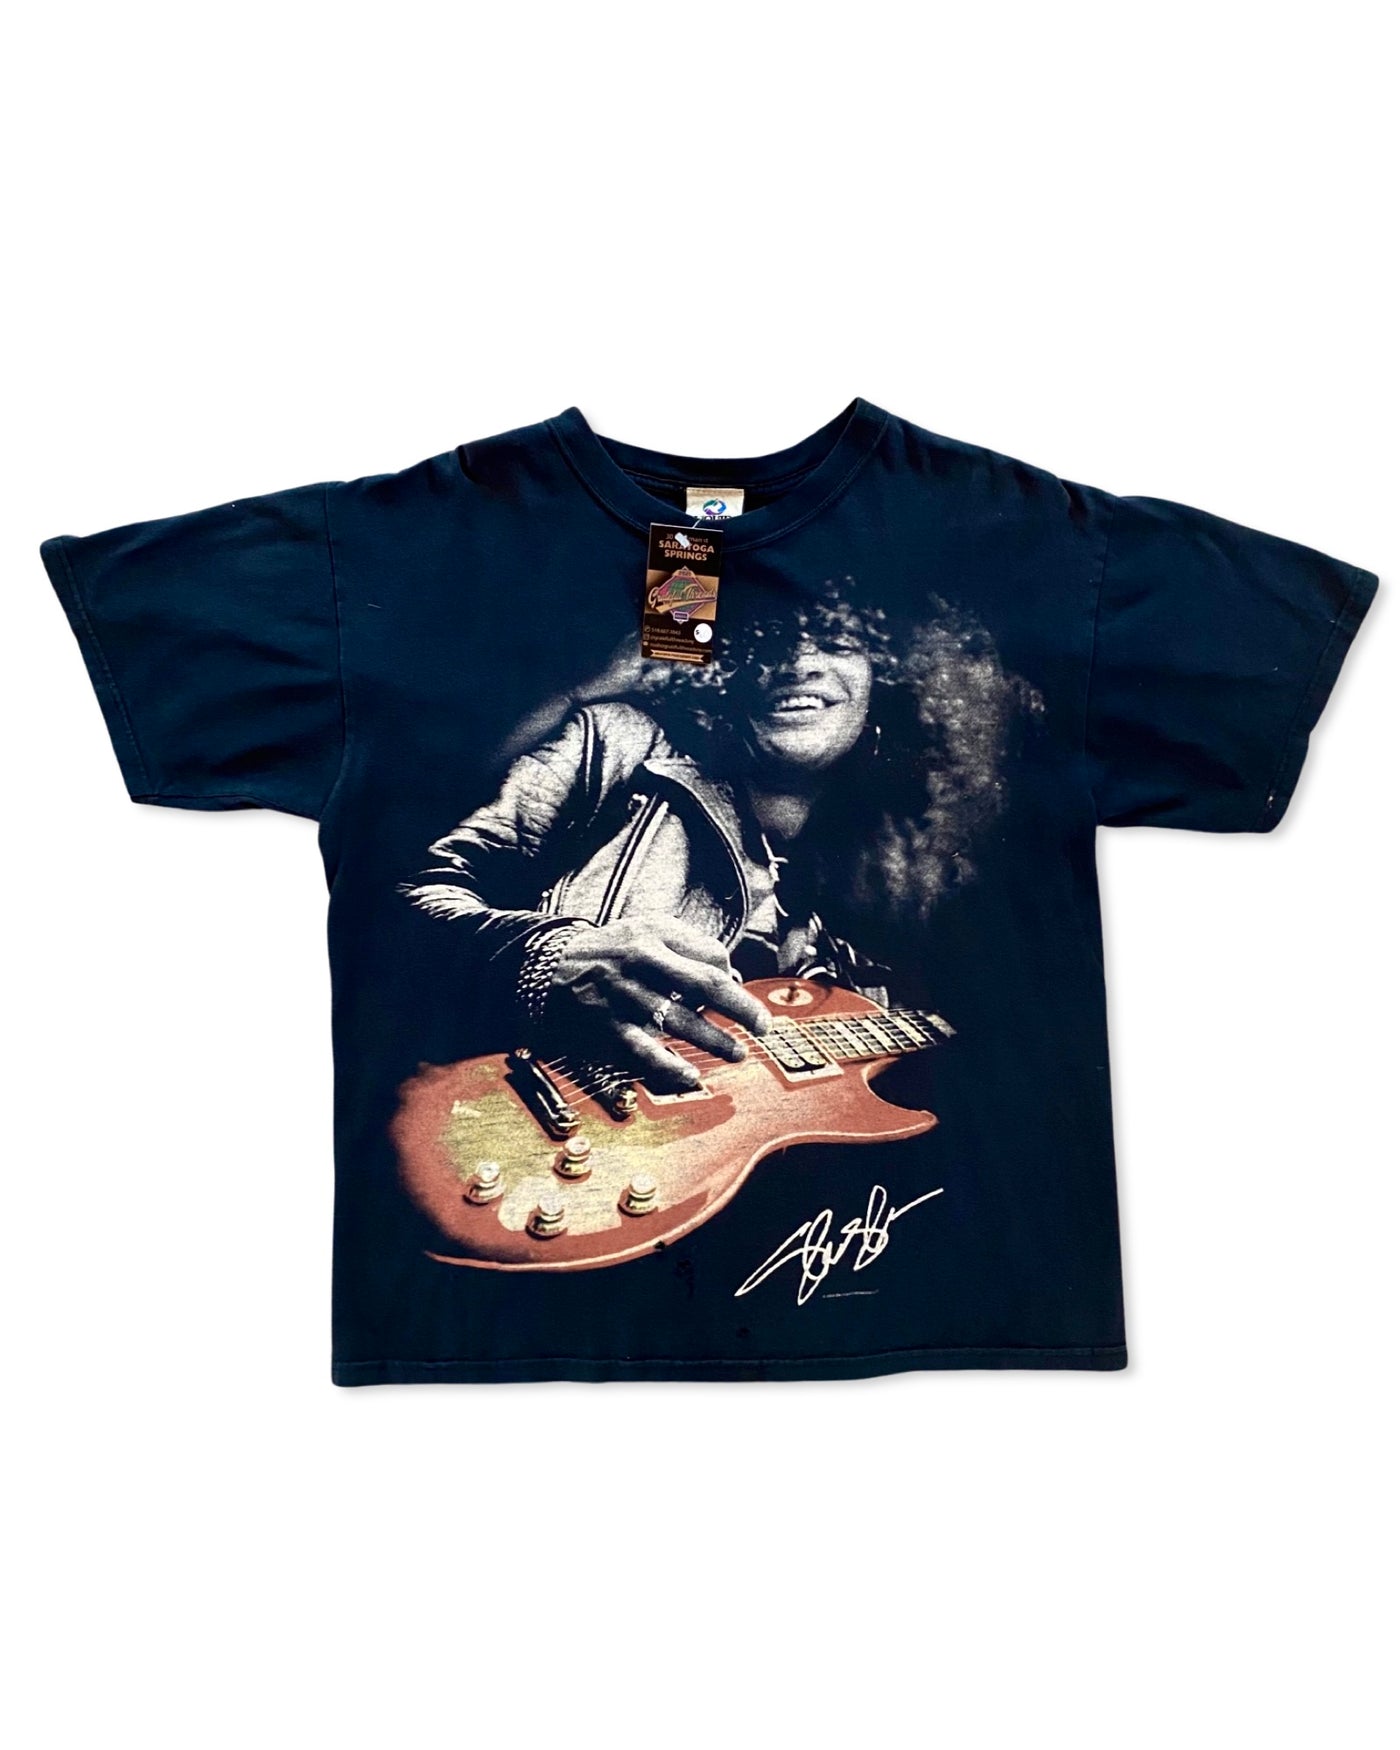 Vintage Slash Guns & Roses T-Shirt